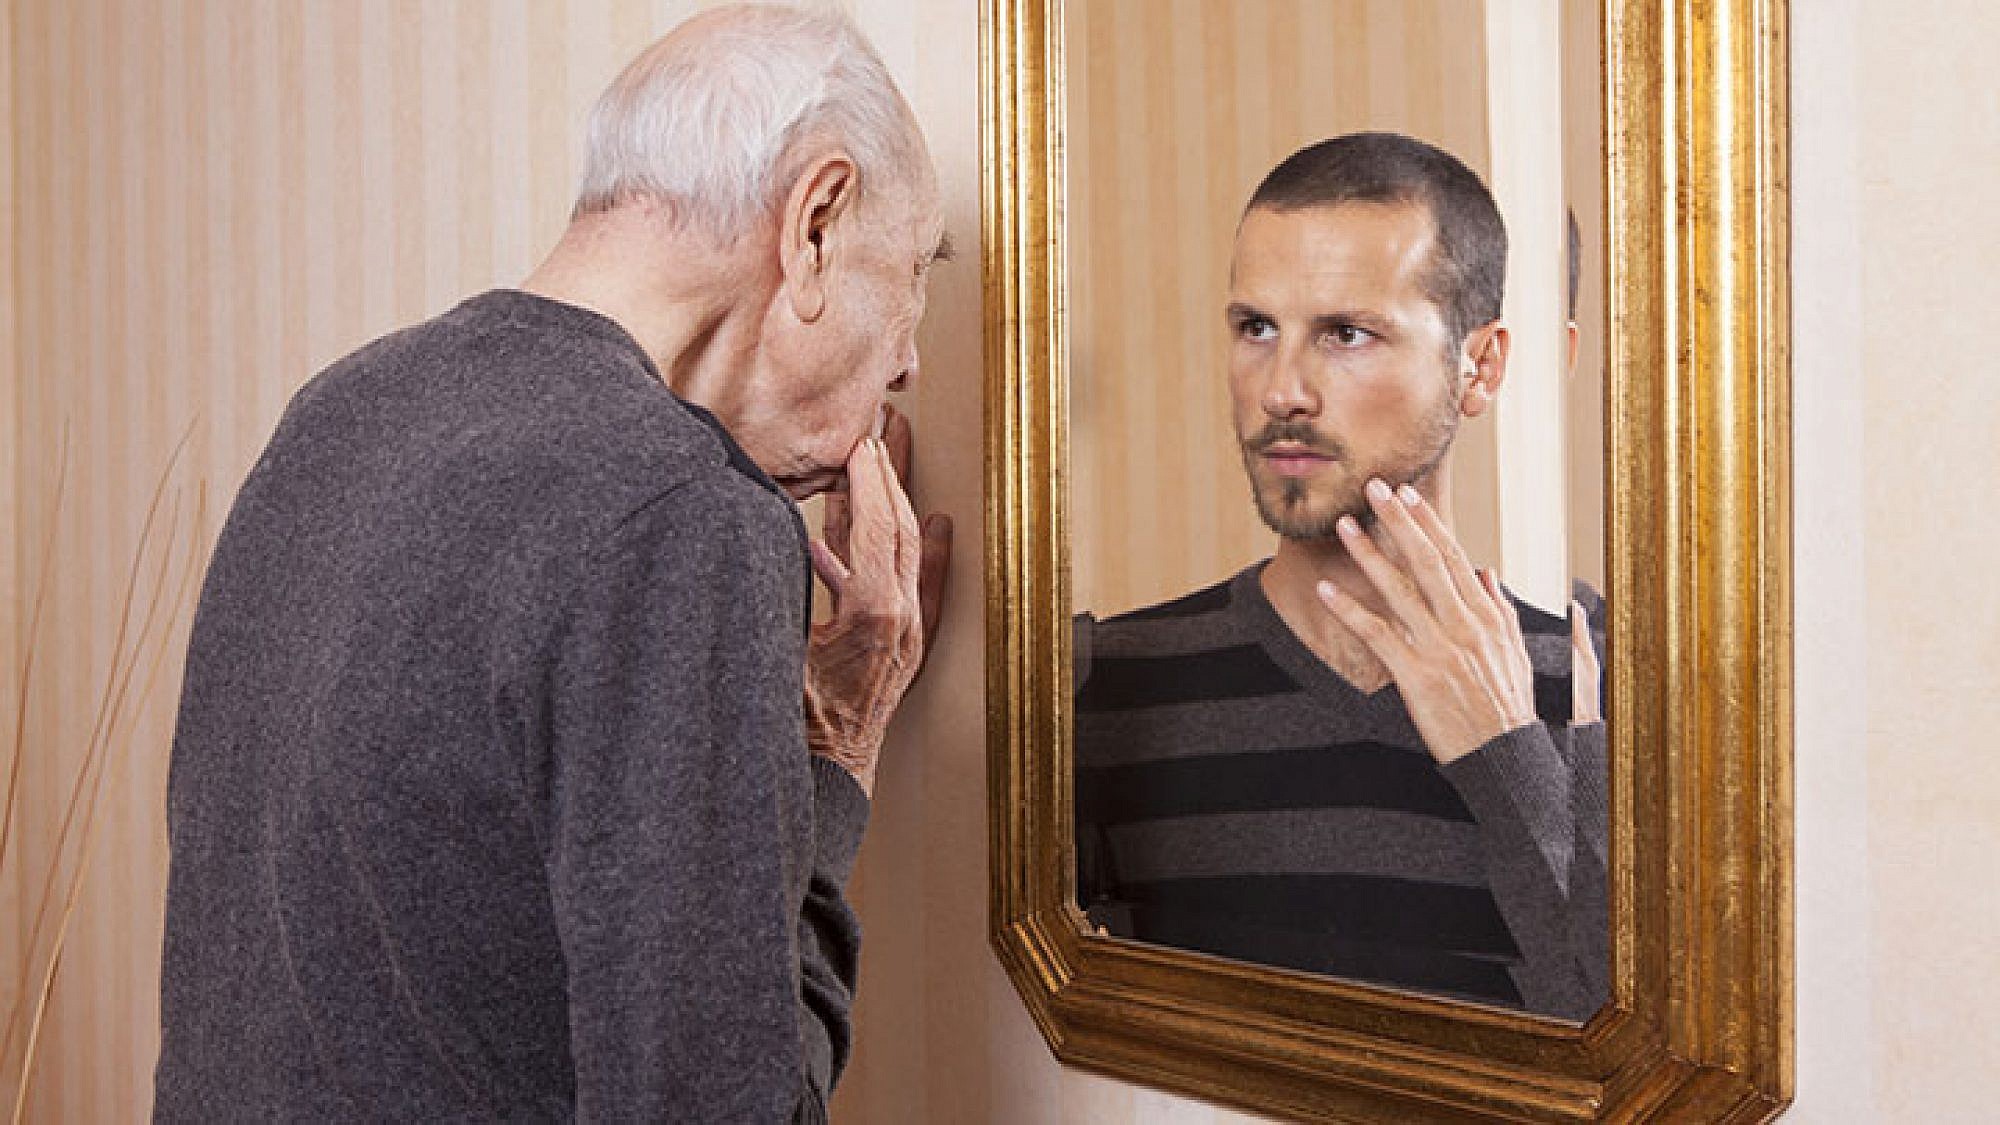 גם גברים משקרים בנוגע לגיל | צילום: shutterstock